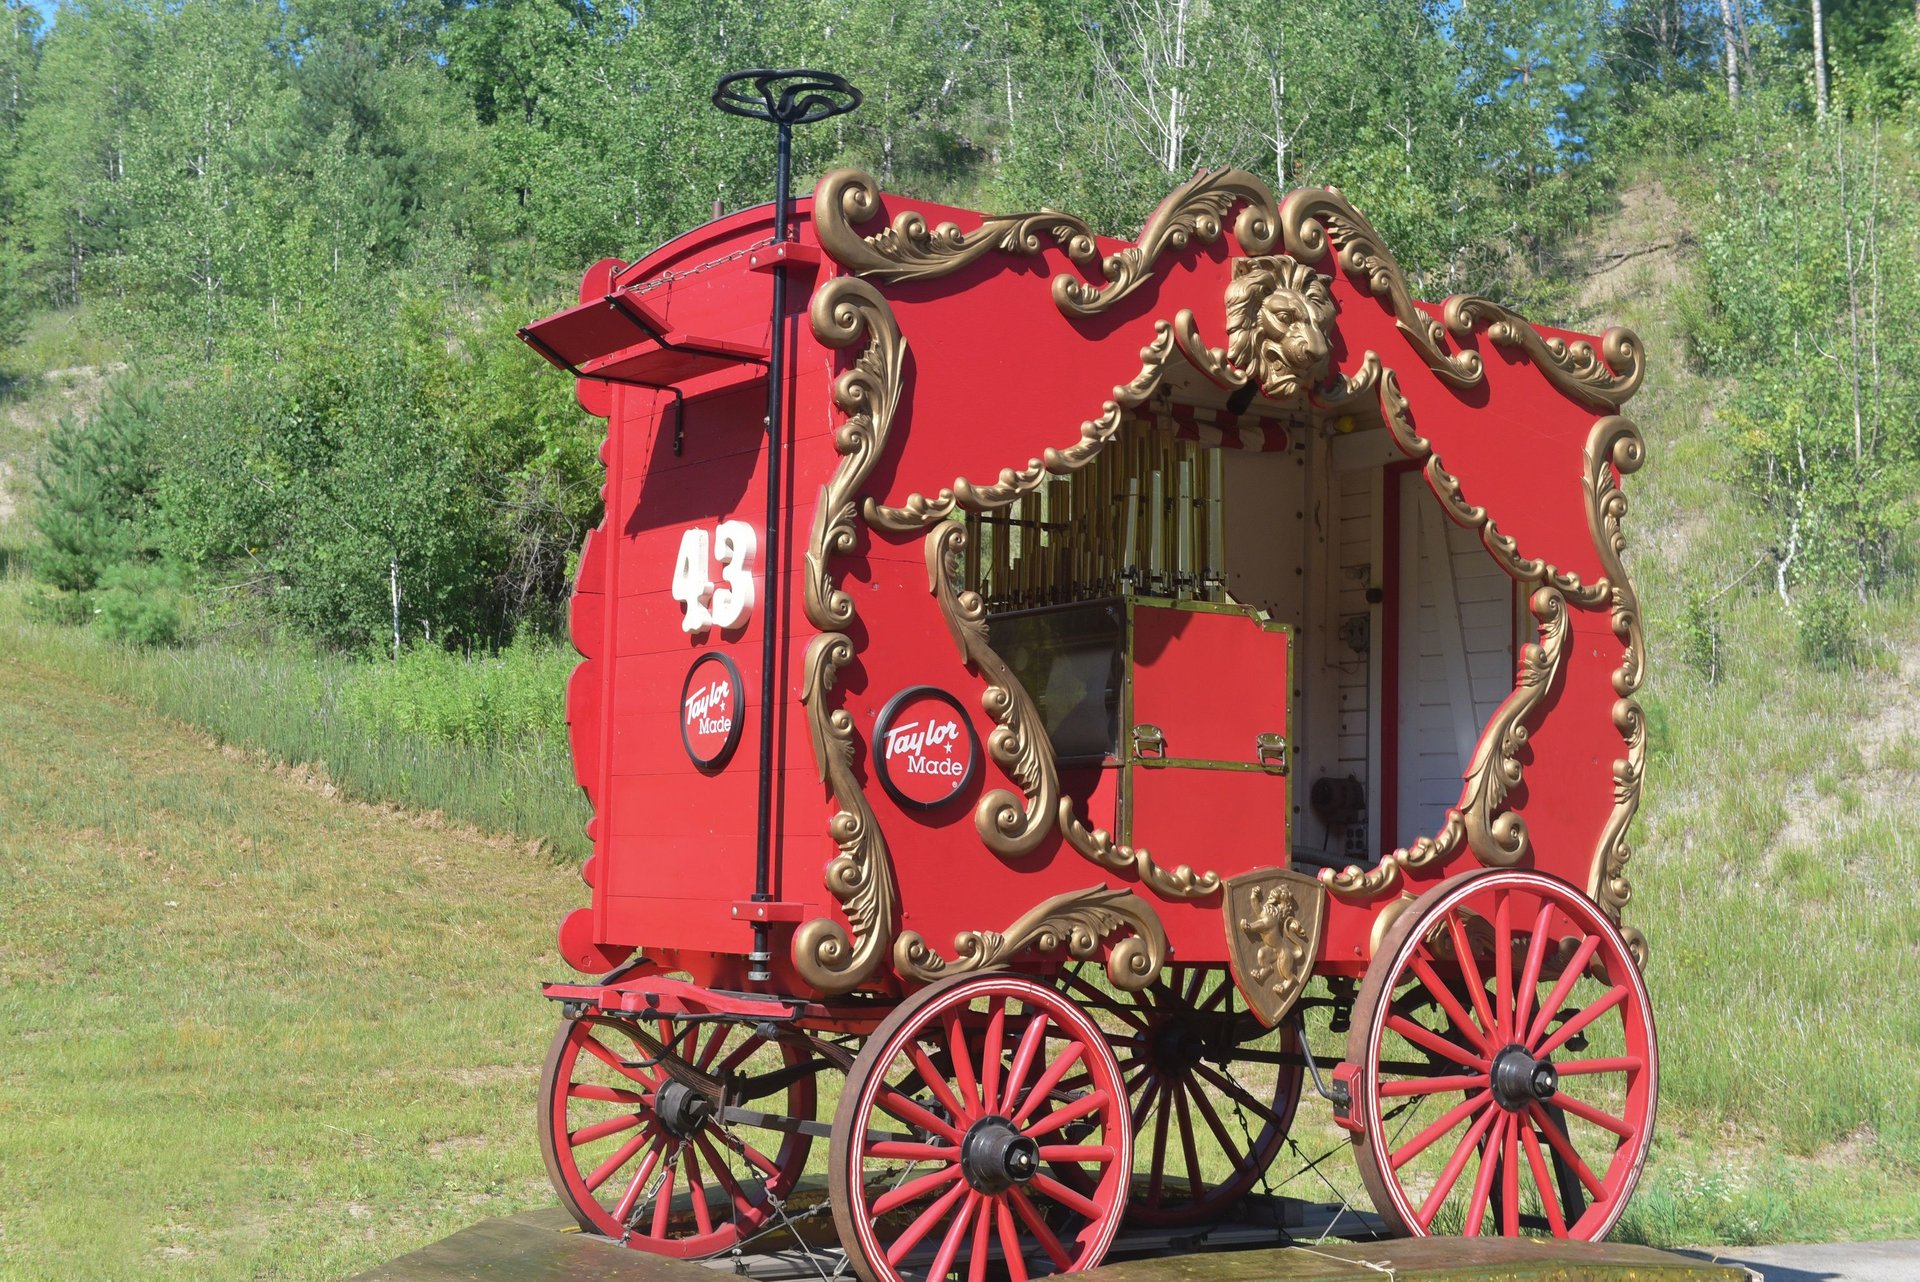 Calliope wagon and trailer